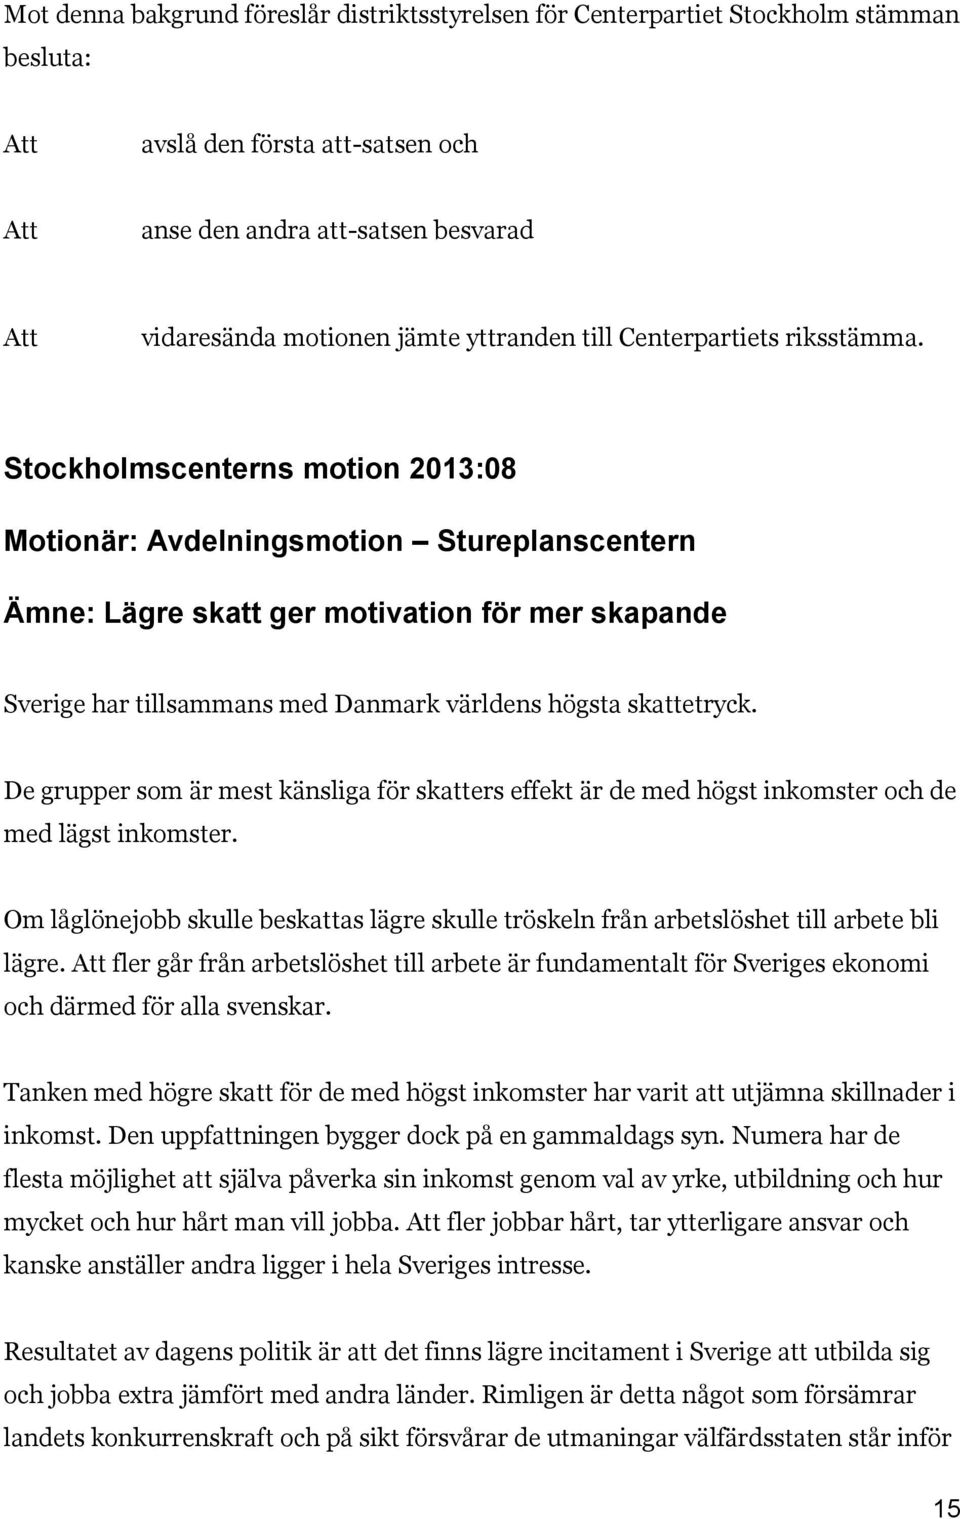 Stockholmscenterns motion 2013:08 Motionär: Avdelningsmotion Stureplanscentern Ämne: Lägre skatt ger motivation för mer skapande Sverige har tillsammans med Danmark världens högsta skattetryck.